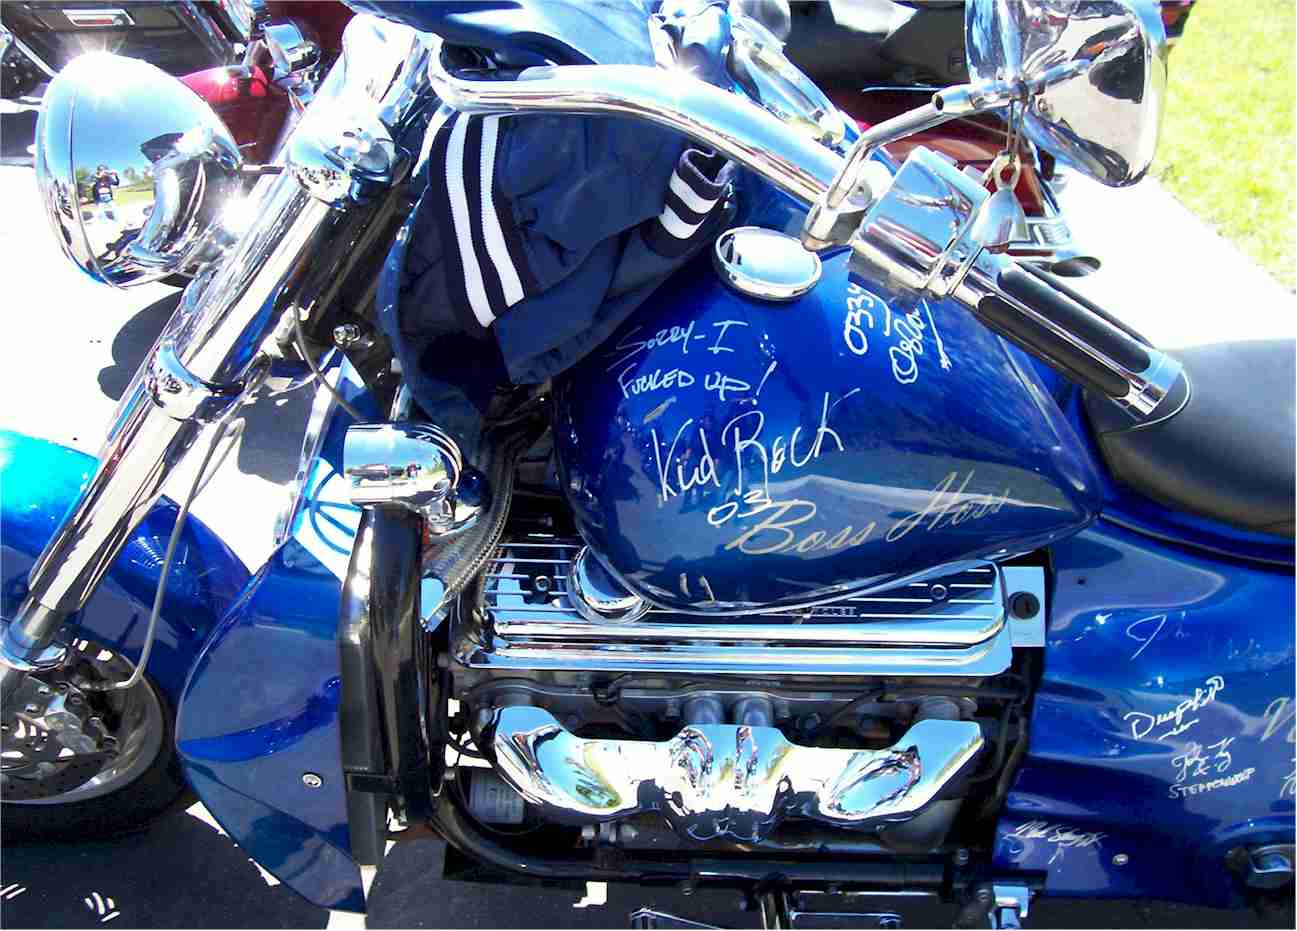 bike signed by Kid Rock